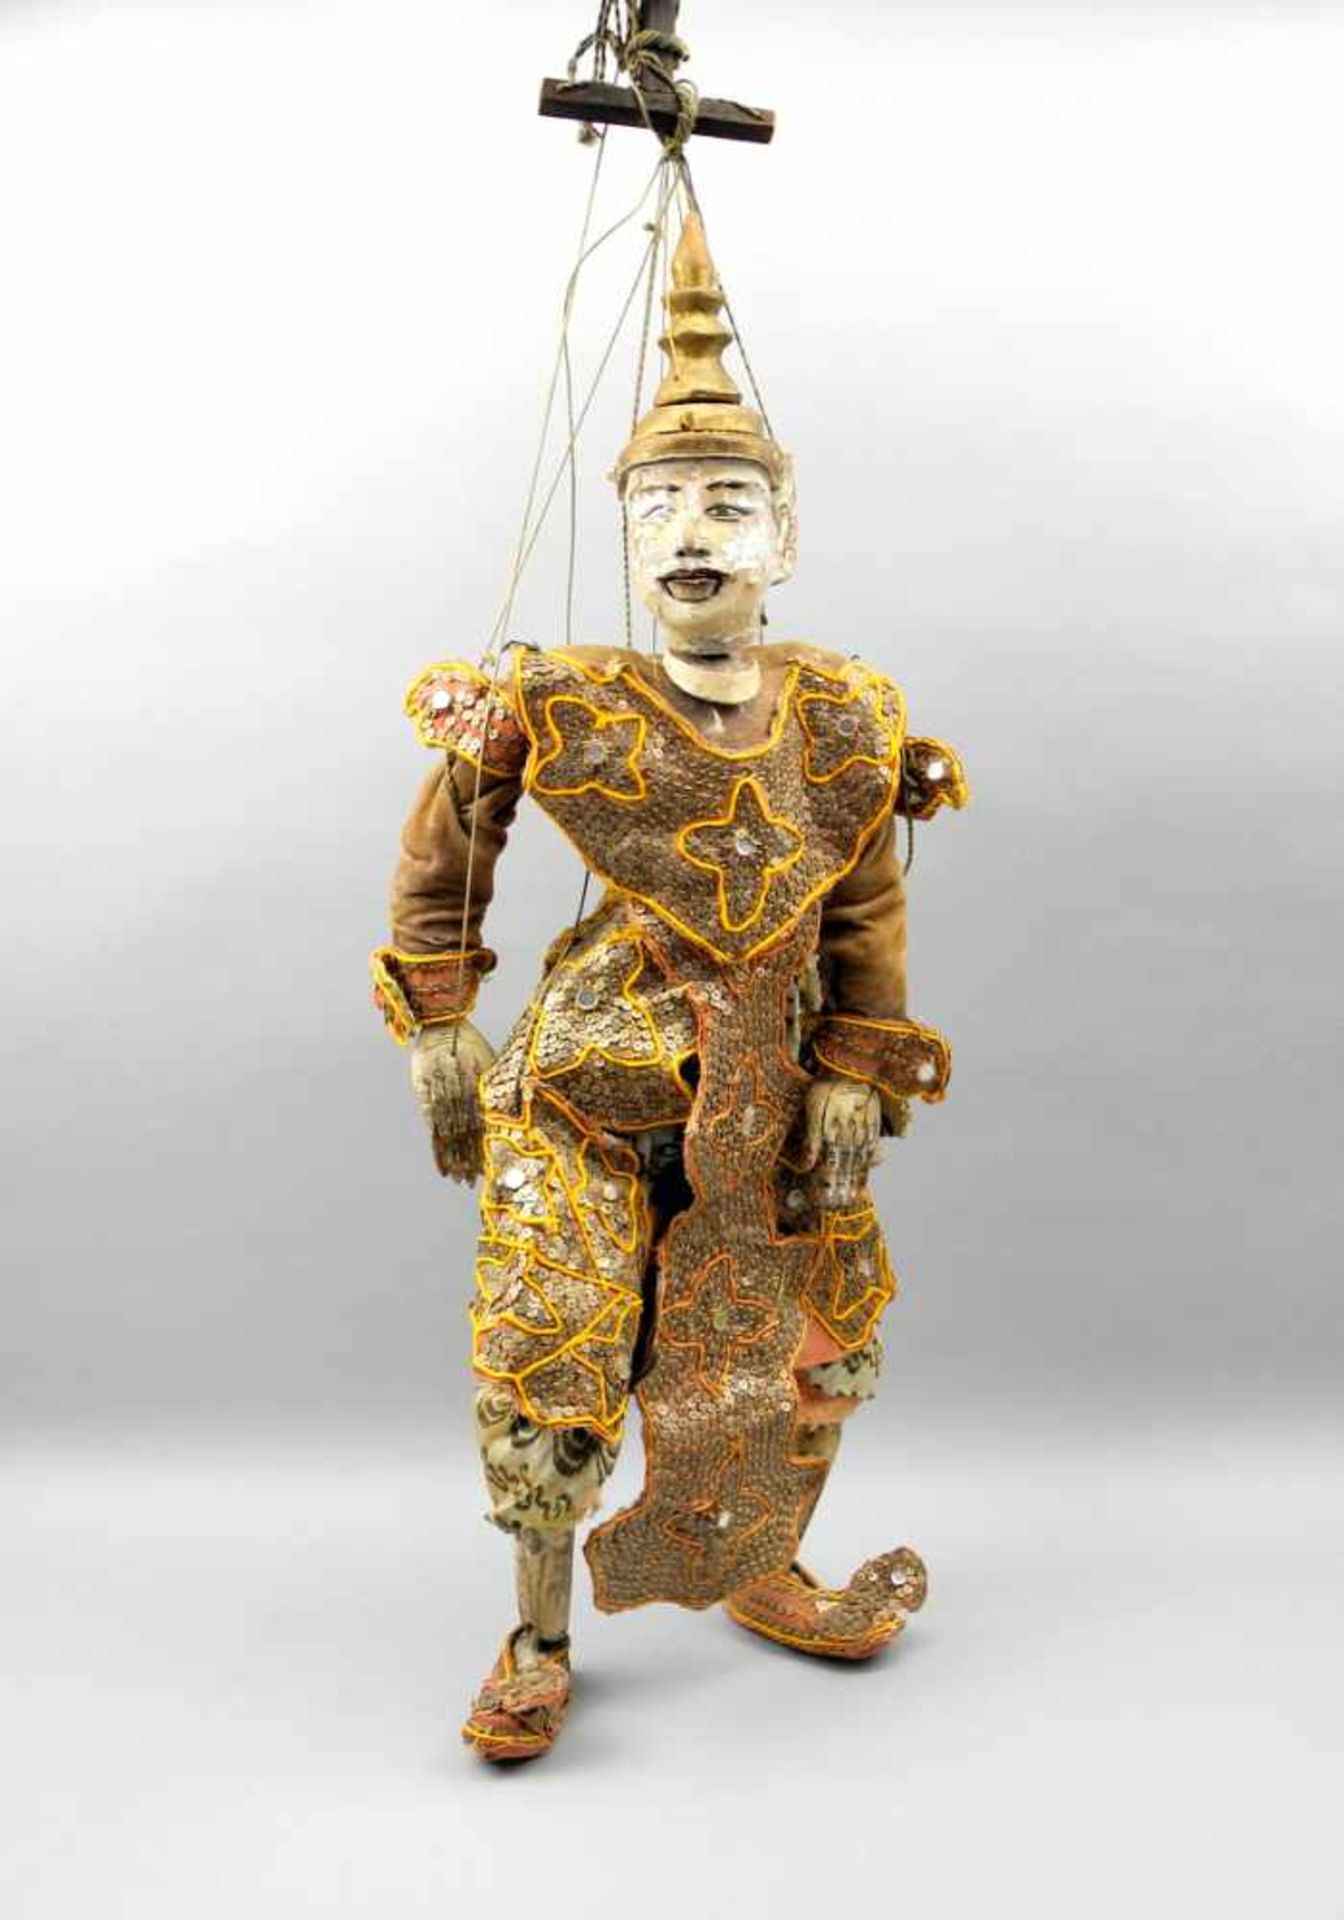 Thailändische MarionetteHolz und Stoff. Große Marionette mit Perlen besticktem Gewand in